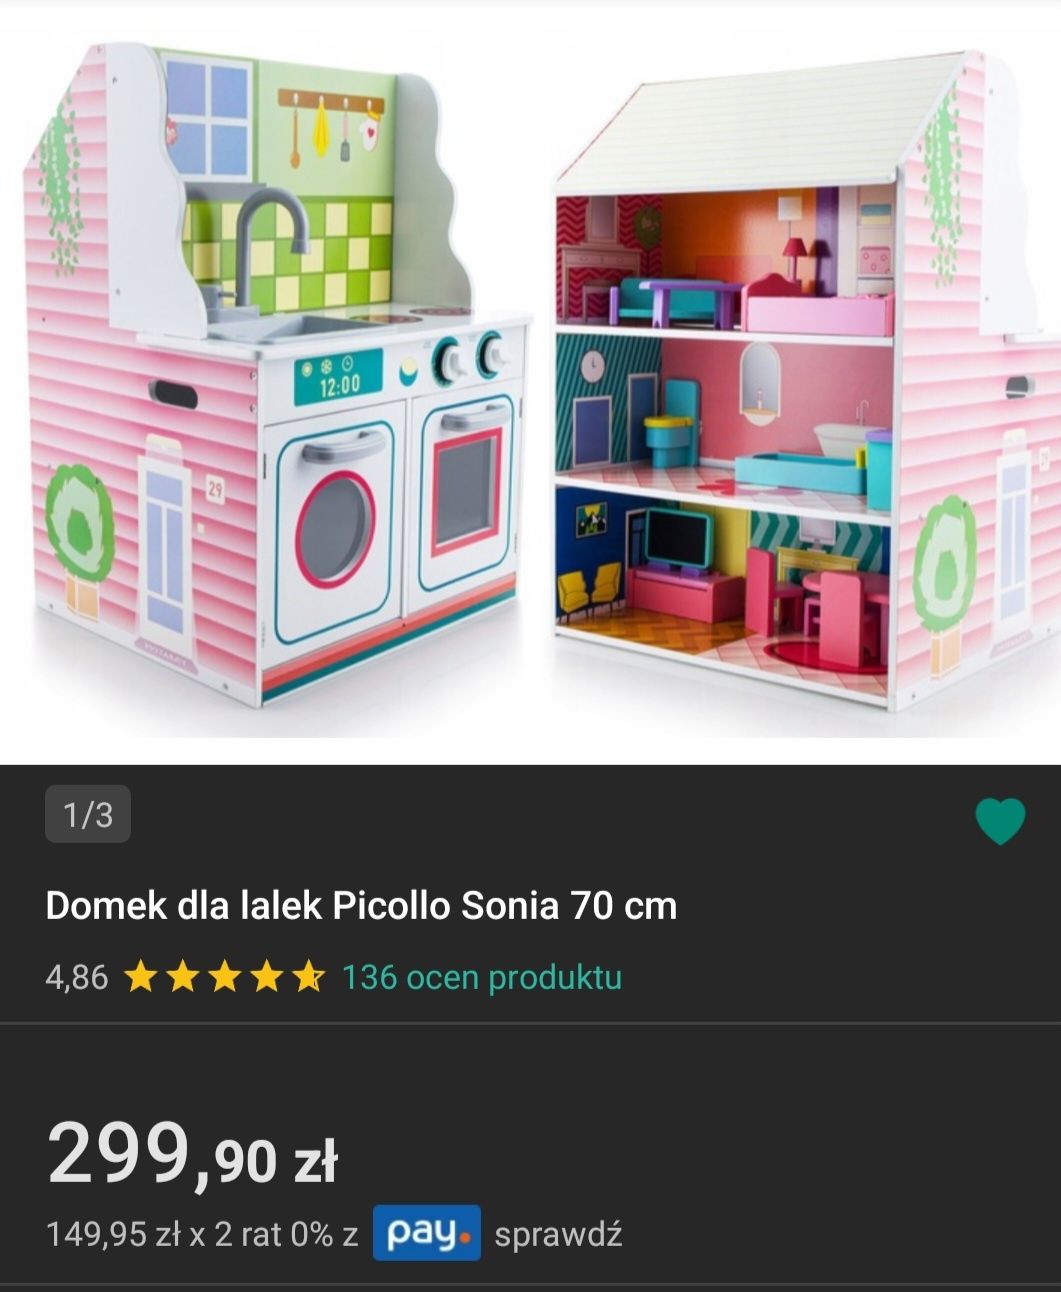 Domek 2w1 dla lalek Picollo Sonia 70 cm z kuchnią i mebelkami. duzy